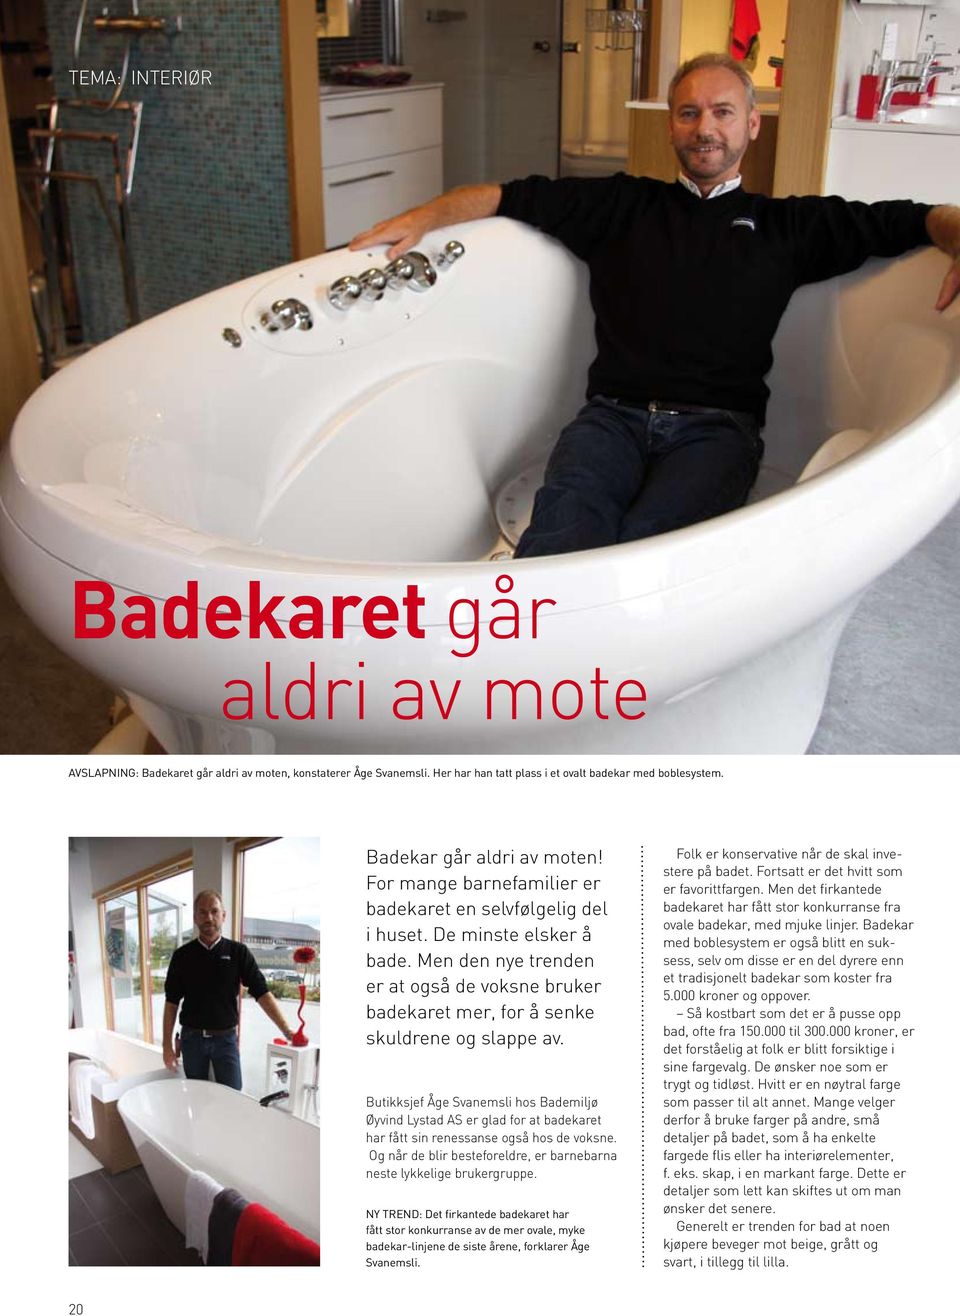 Butikksjef Åge Svanemsli hos Bademiljø Øyvind Lystad AS er glad for at badekaret har fått sin renessanse også hos de voksne. Og når de blir besteforeldre, er barnebarna neste lykkelige brukergruppe.